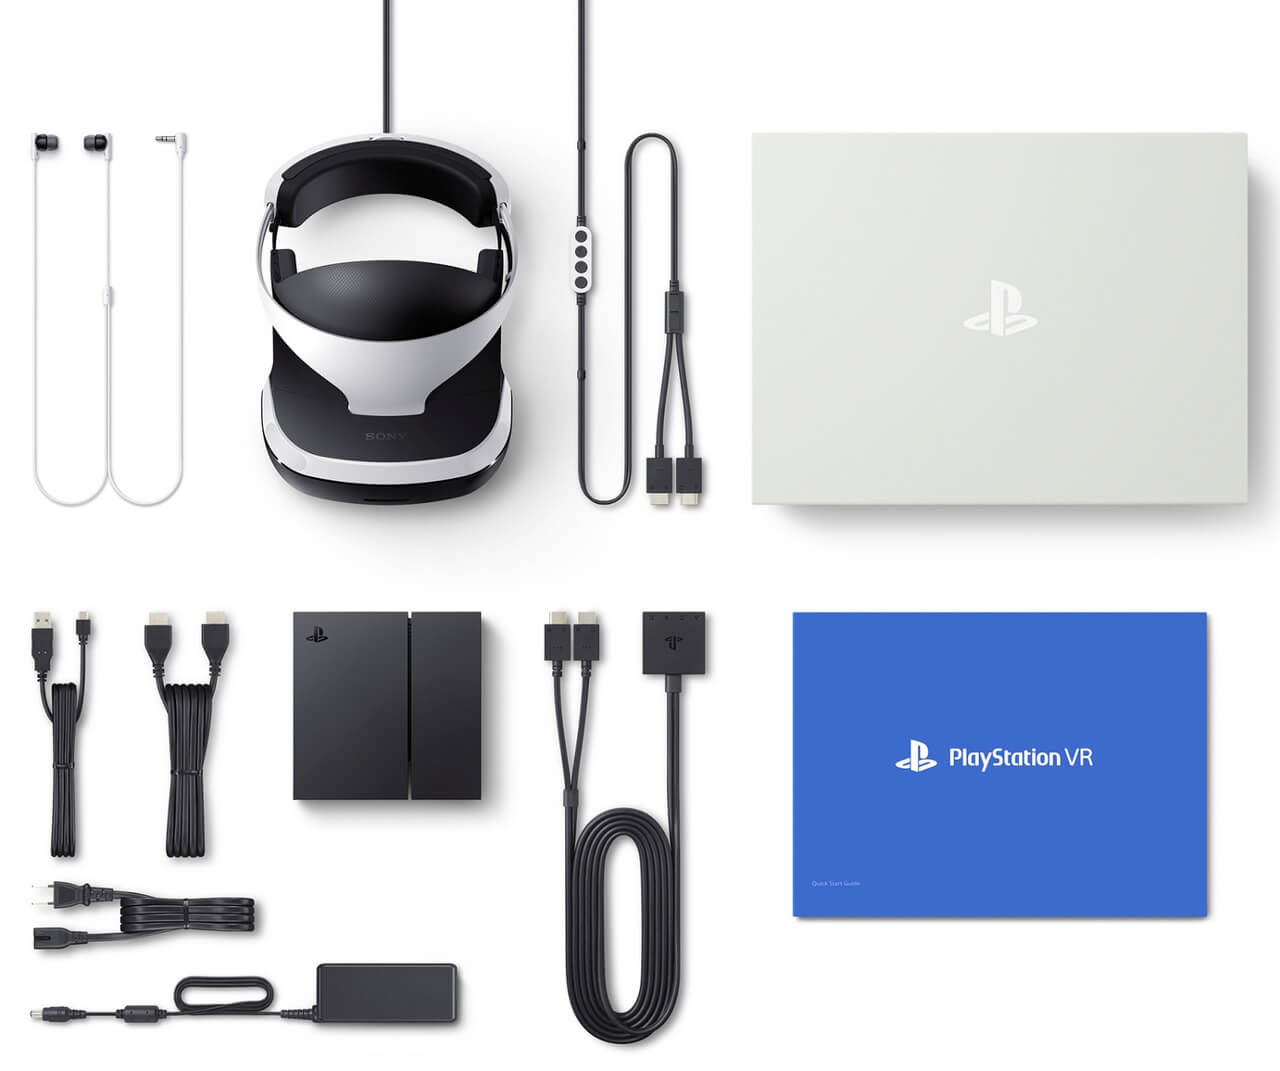 PlayStation VR sai em outubro